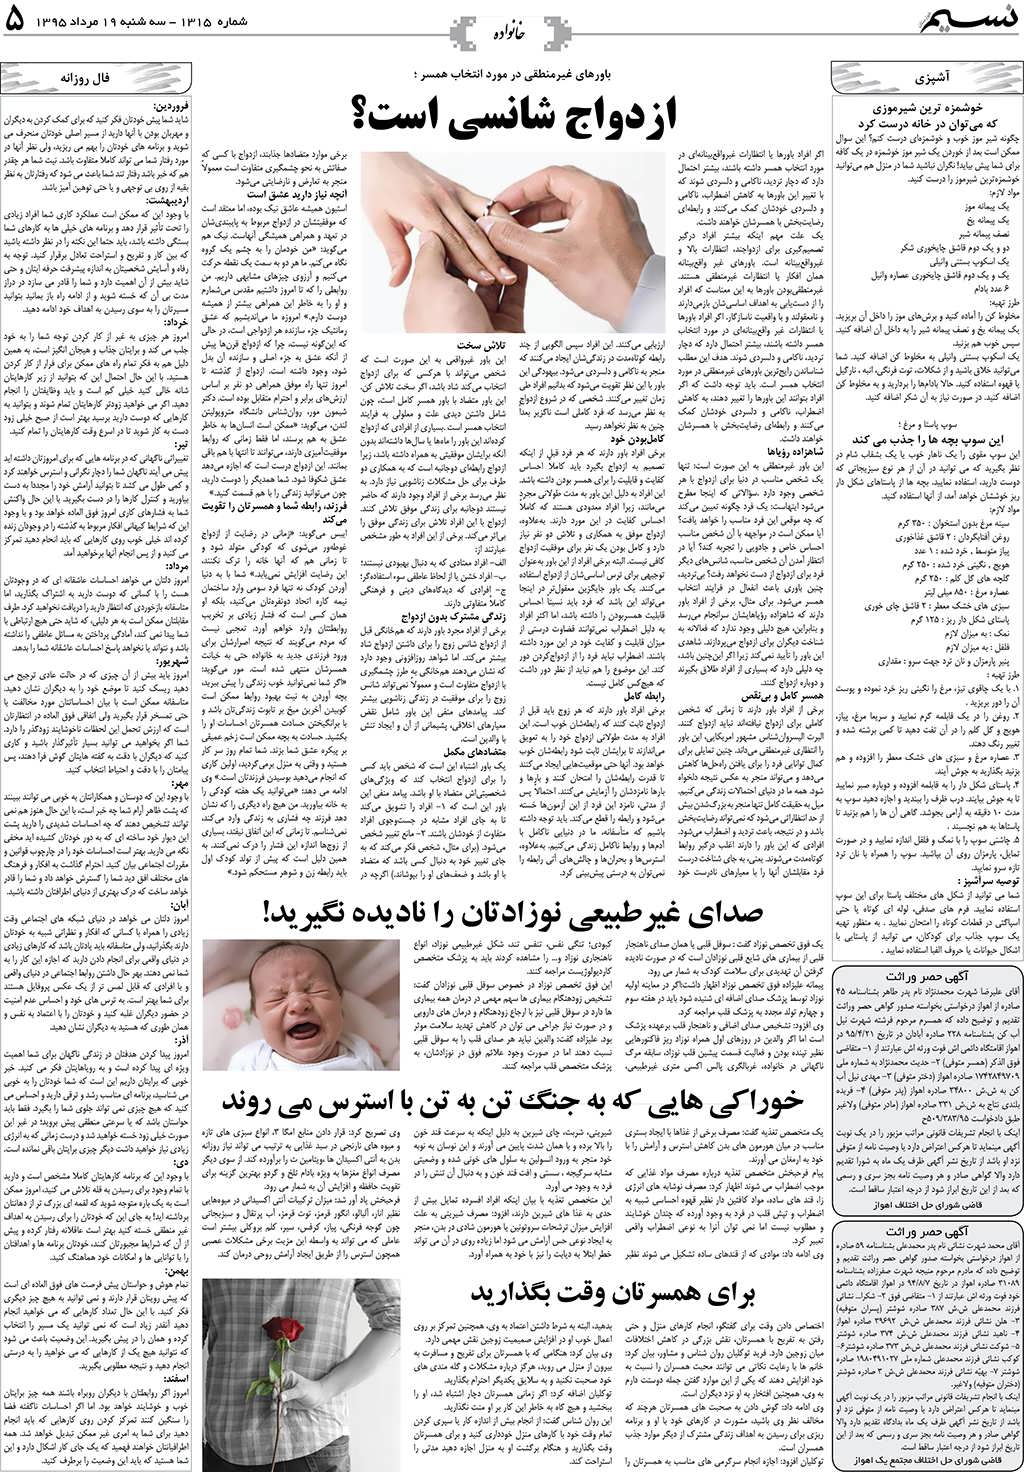 صفحه خانواده روزنامه نسیم شماره 1315